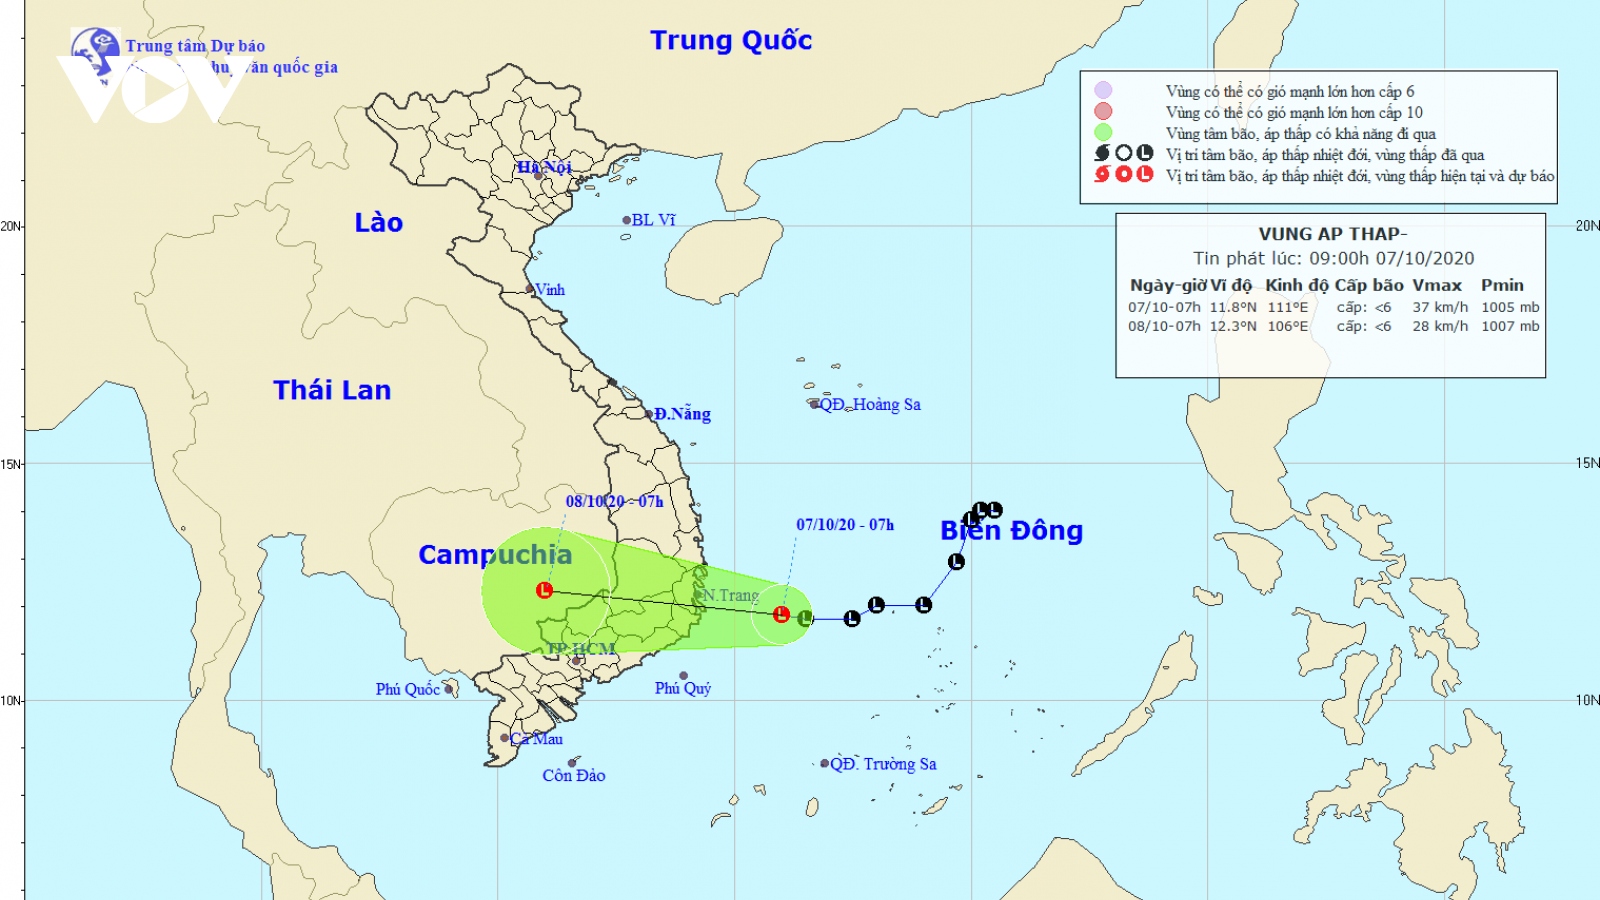 Vùng áp thấp cách Phú Yên, Khánh Hòa khoảng 170km, mưa lớn kéo dài ở Trung Bộ